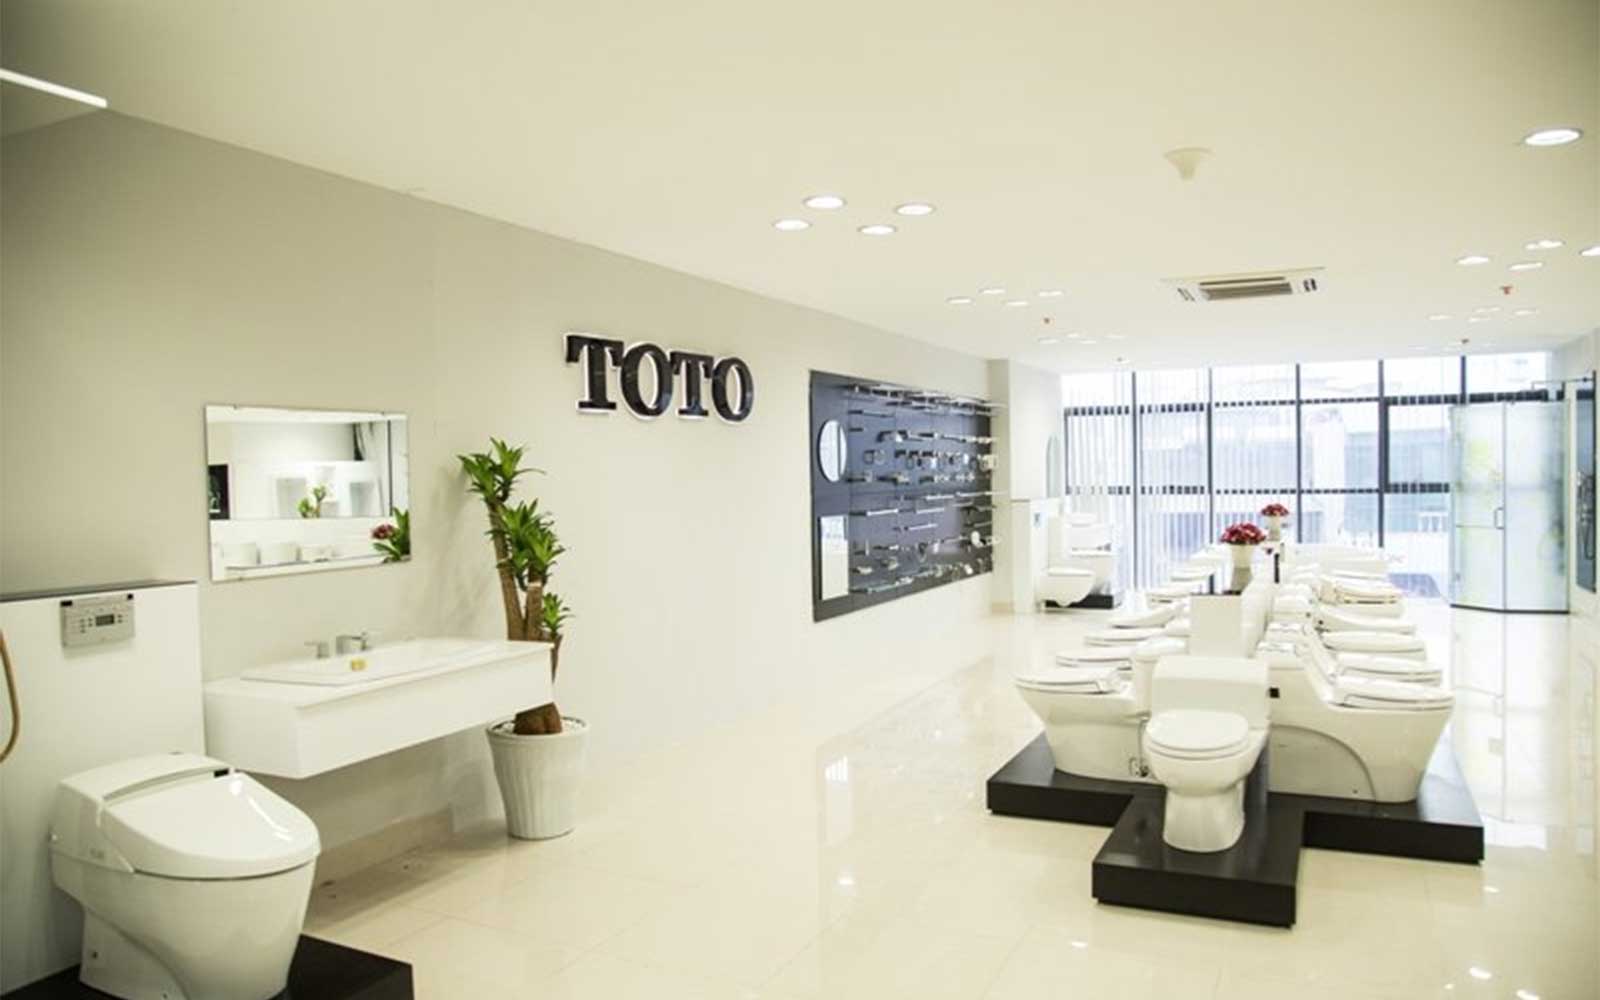 Thiết bị vệ sinh TOTO - thương hiệu nổi tiếng đến từ Nhật Bản